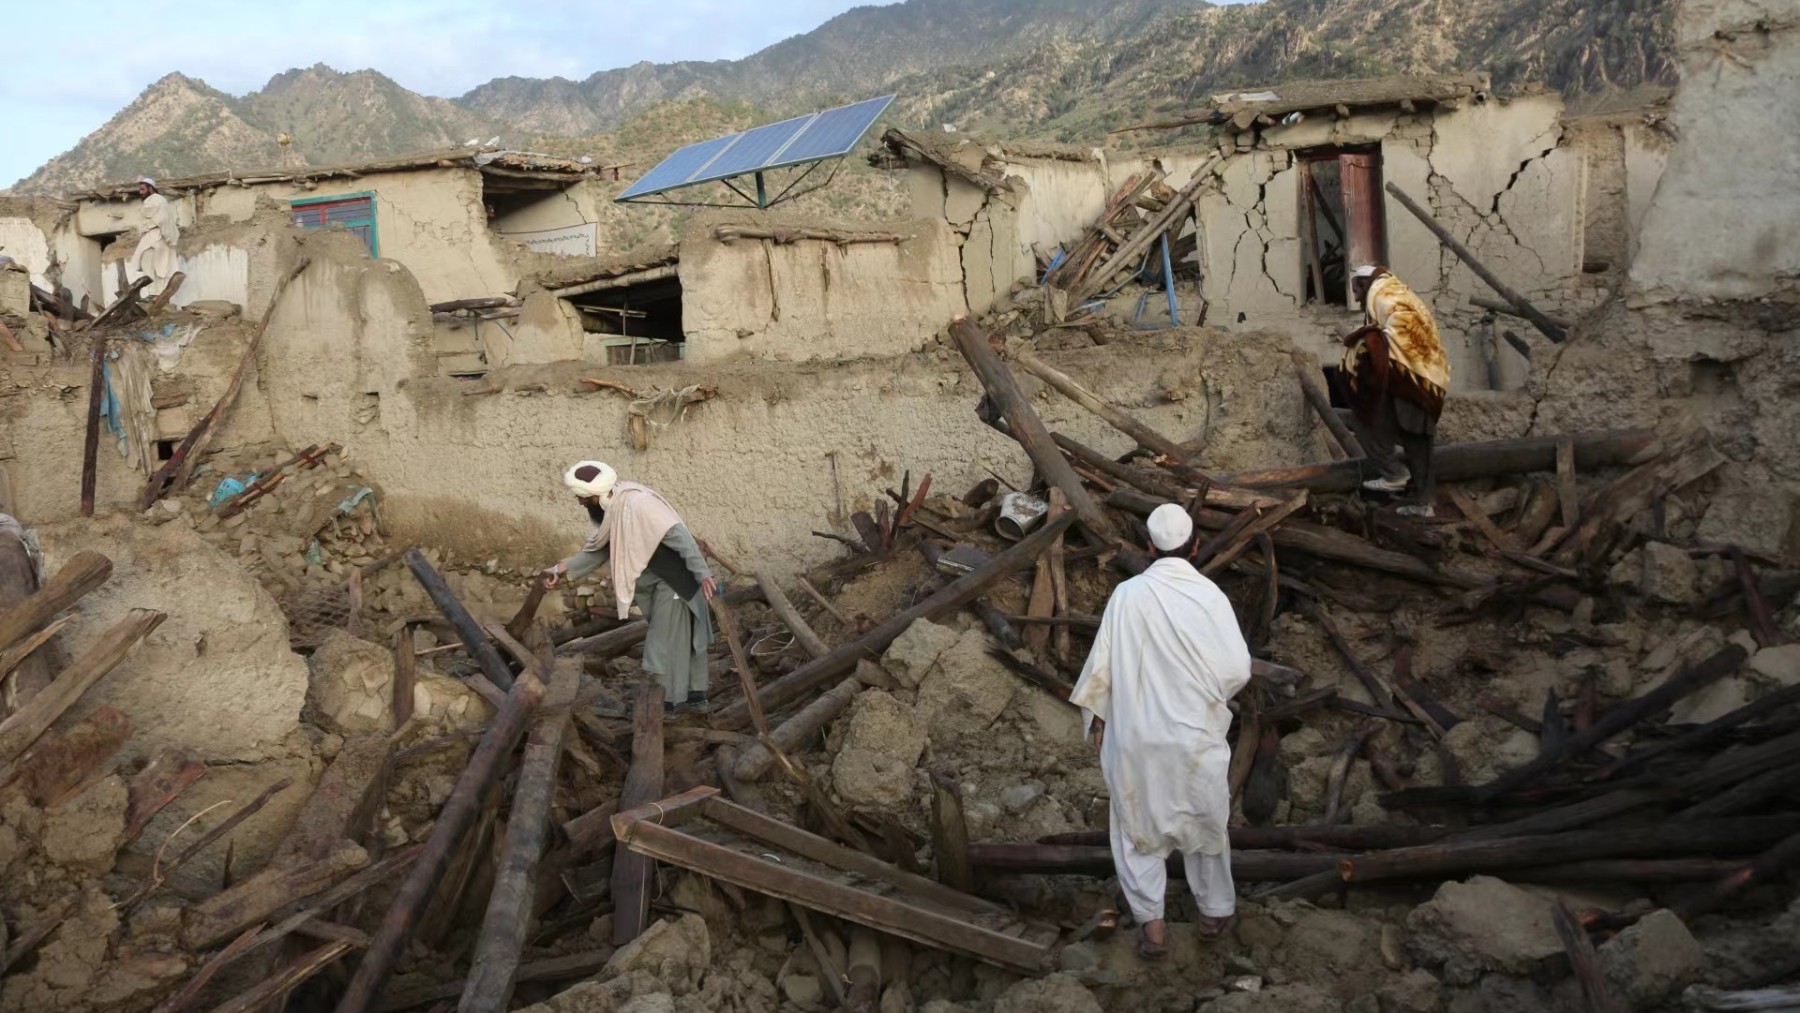 Daños materiales a causa de un terremoto en Afganistán. (Foto: Ep)